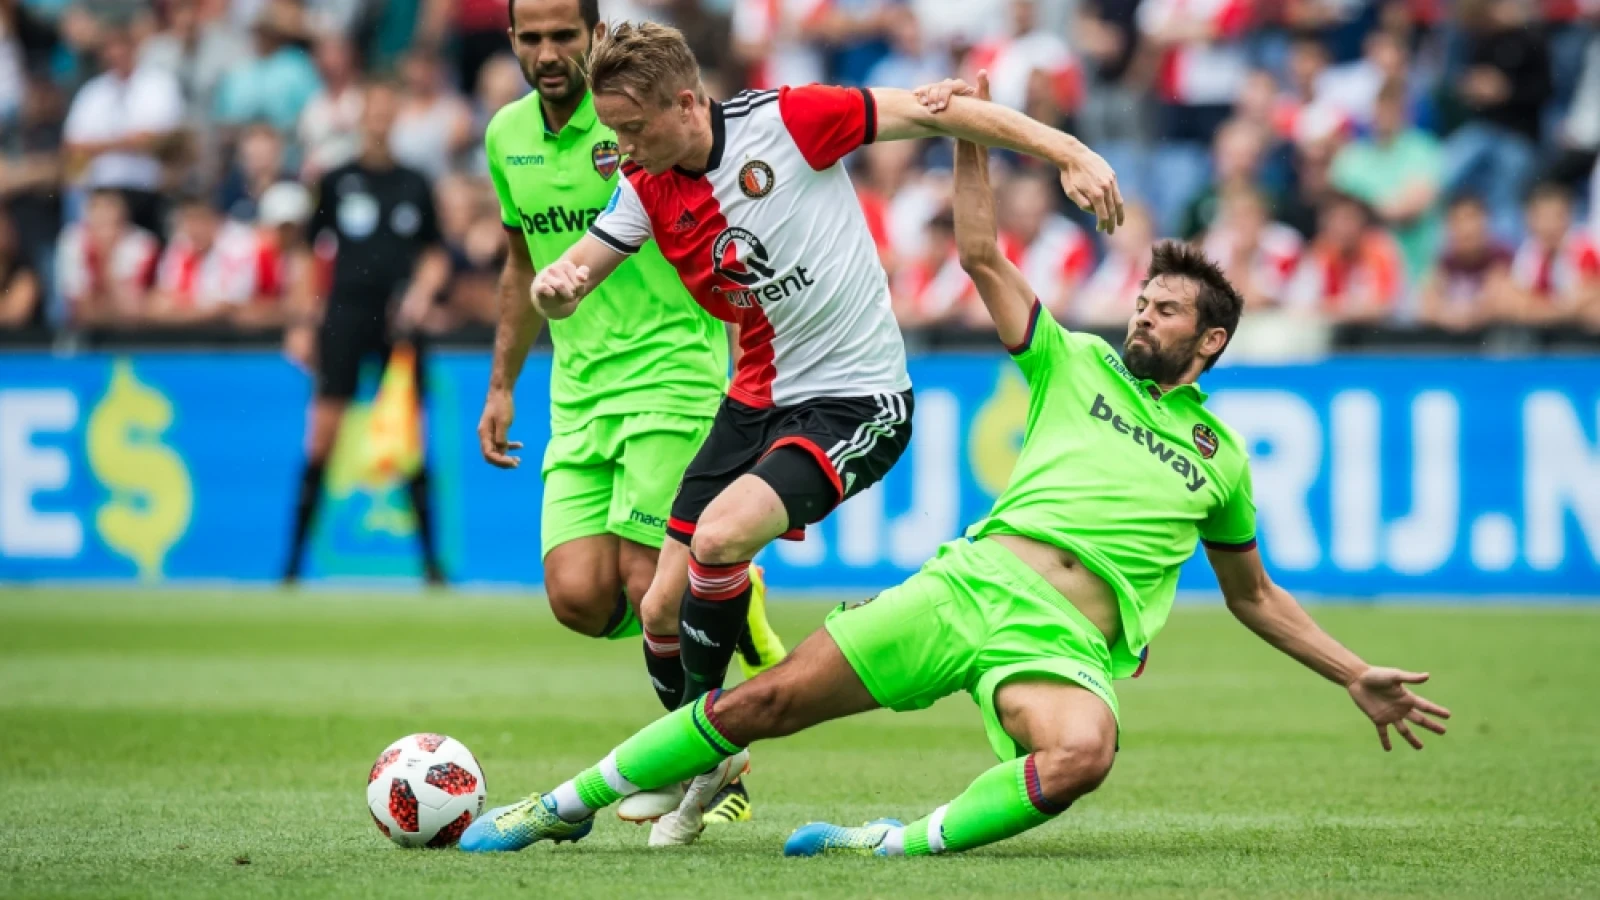 LIVE | Feyenoord - Levante 2-1 | Afgelopen Feyenoord wint verdiend 